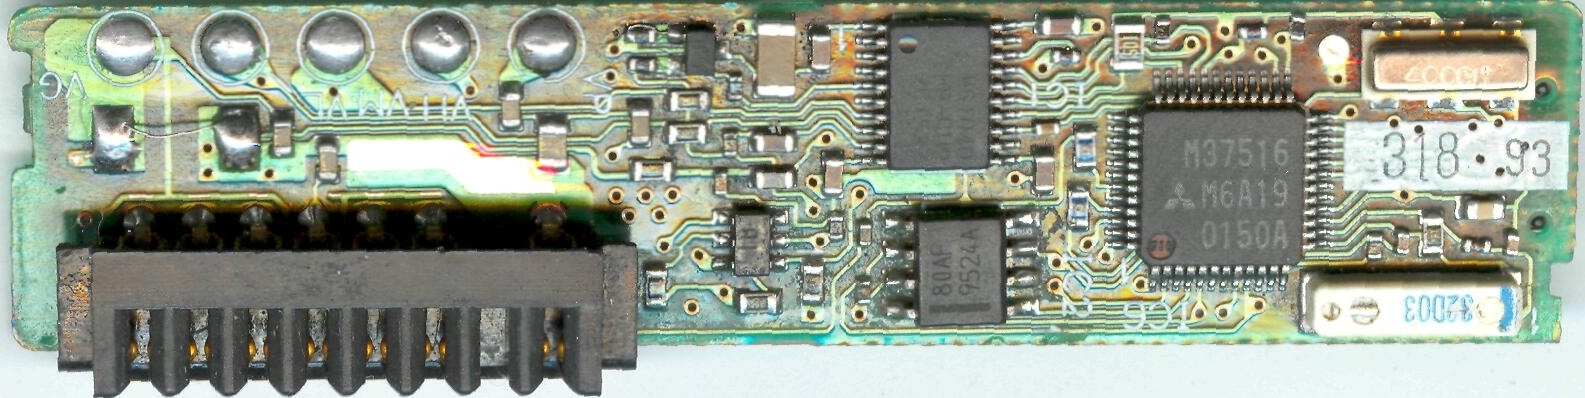 Как с помощью Arduino считать данные из контроллера батареи ноутбука?